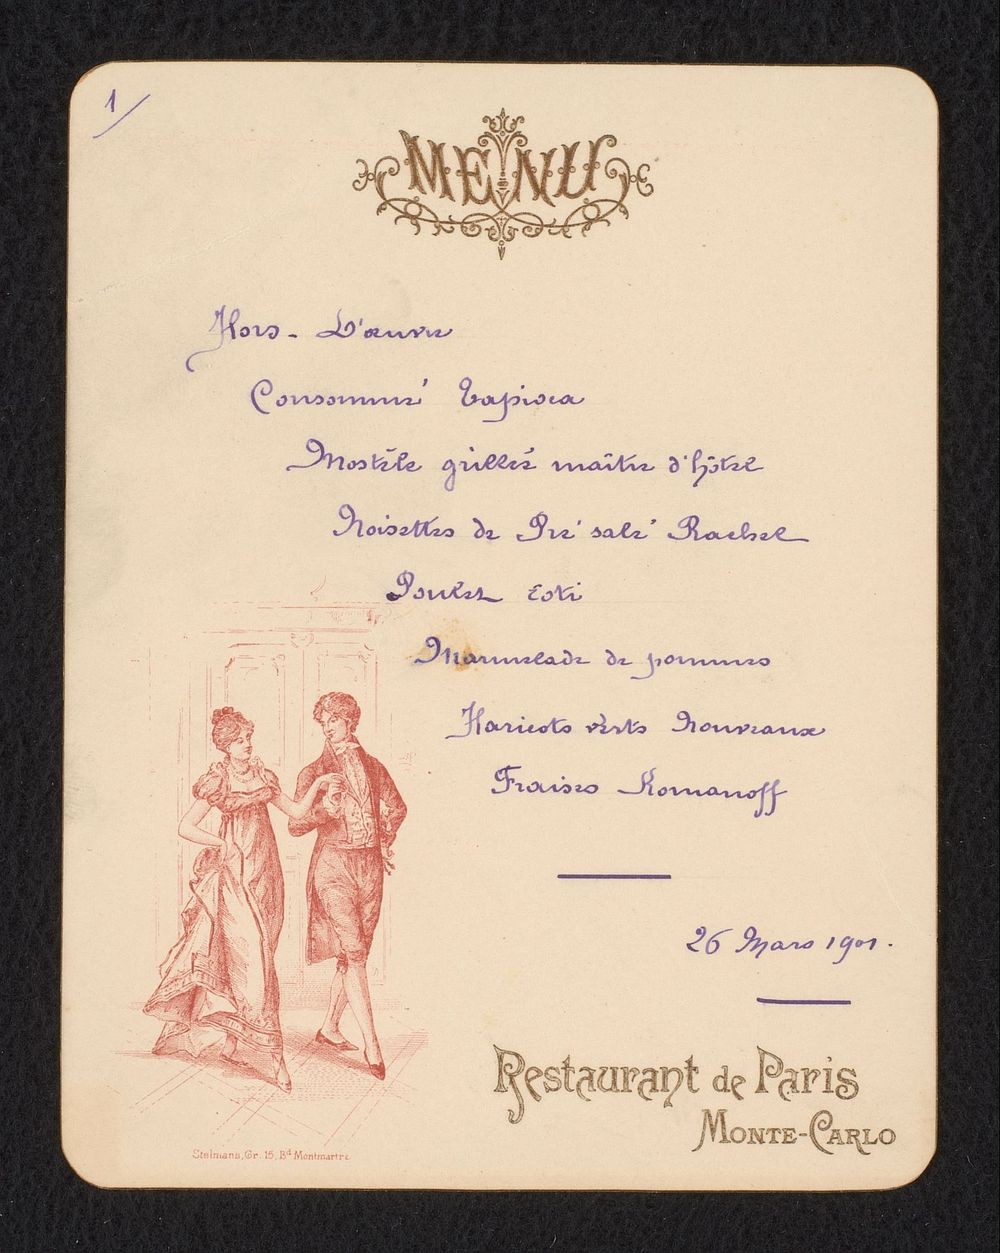 Menukaart van Restaurant de Paris in Monte Carlo voor 26 maart 1901 (before 1901) by anonymous and Louis Stelmans